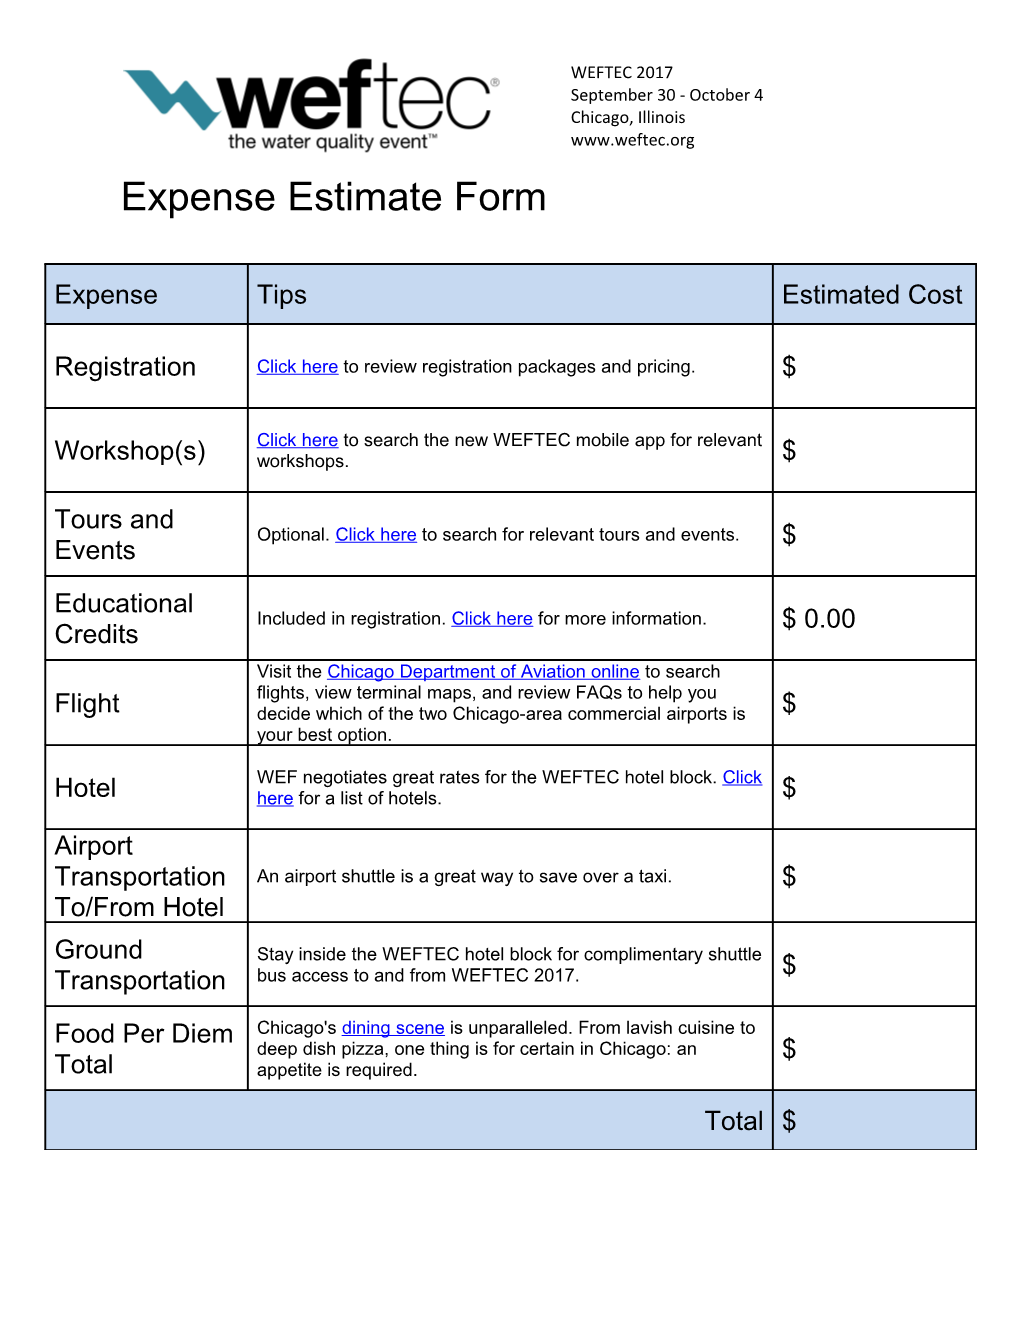 WEFTEC Expense Estimate Form2013